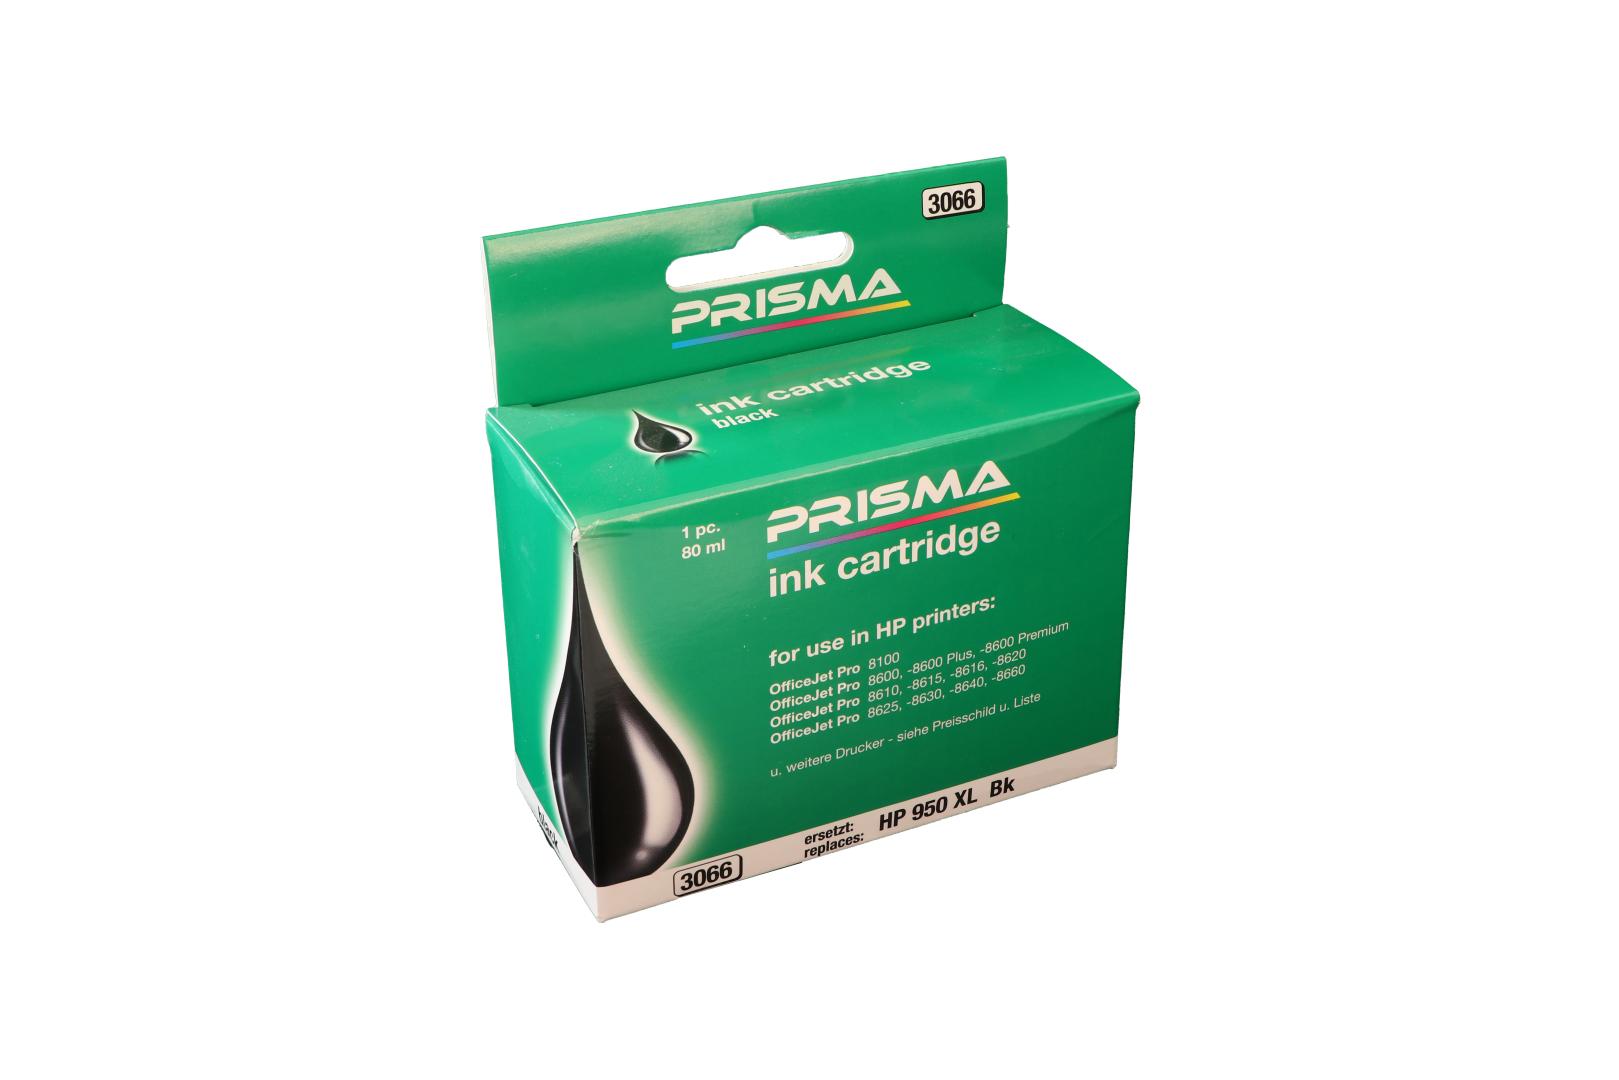 PRISMA 3066 Druckerpatrone für HP Tintenstrahldrucker, schwarz, 80 ml